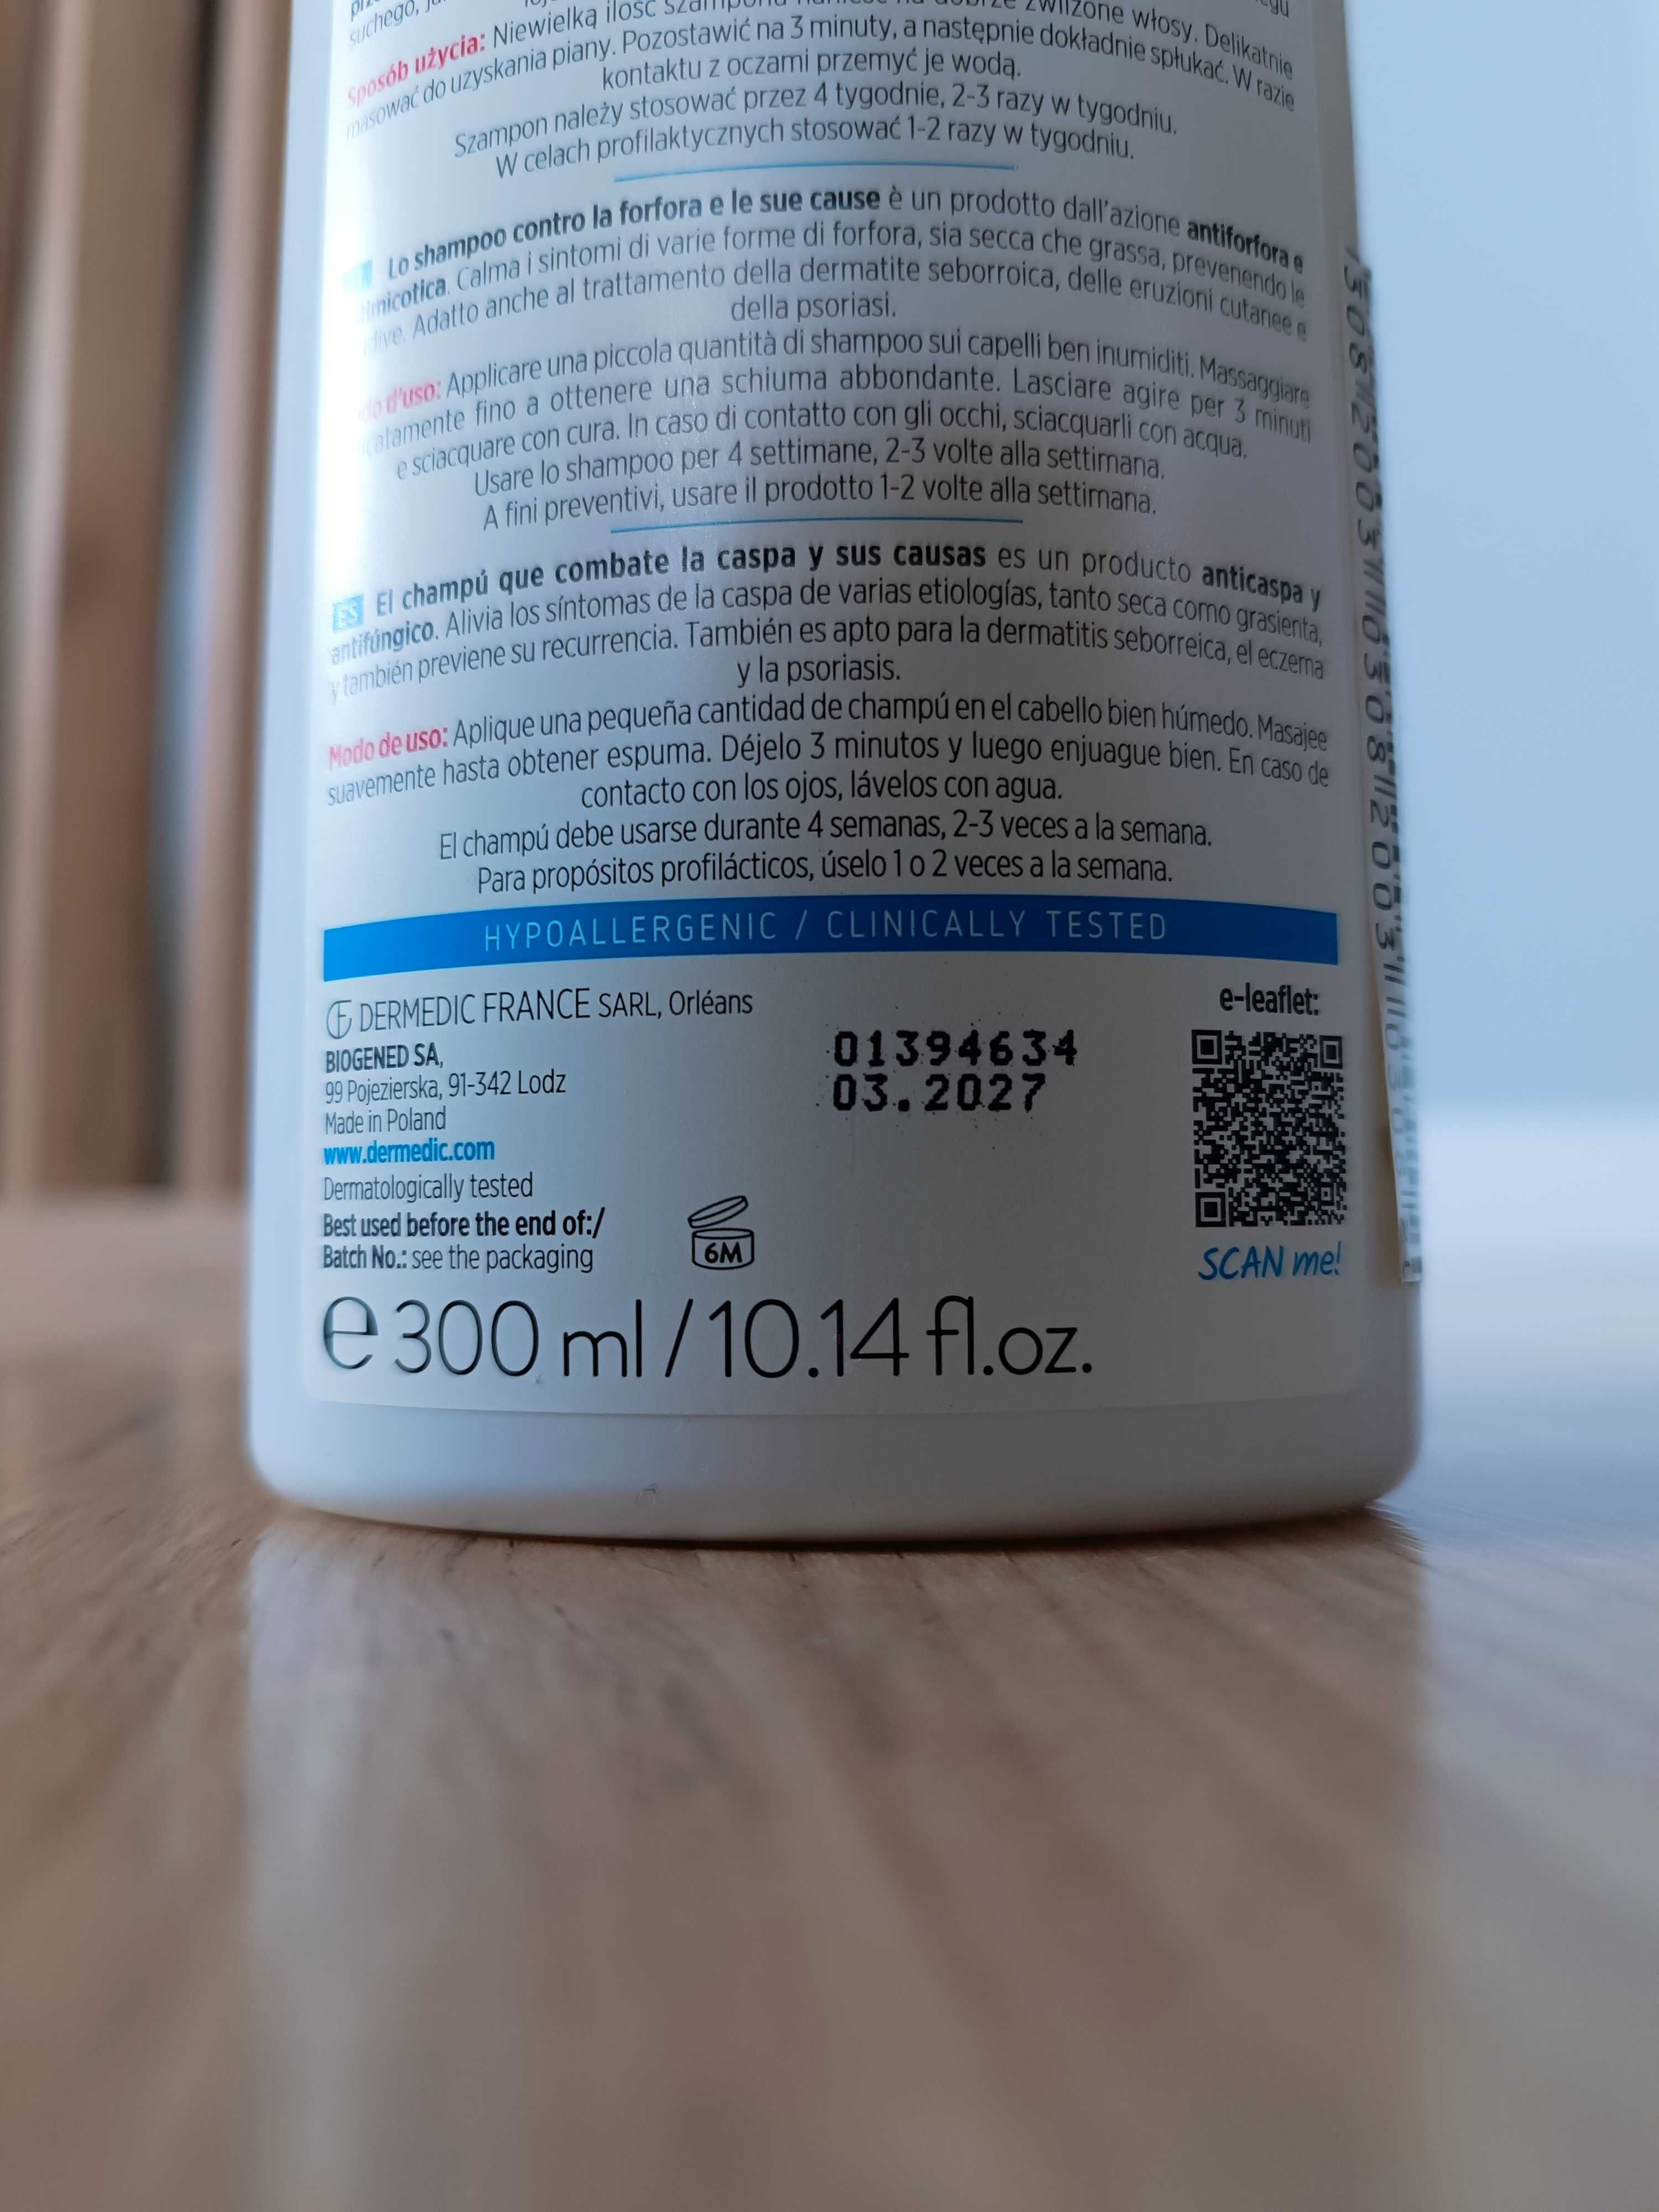 Dermedic Capilarte szampon przeciwłupieżowy 300 ml